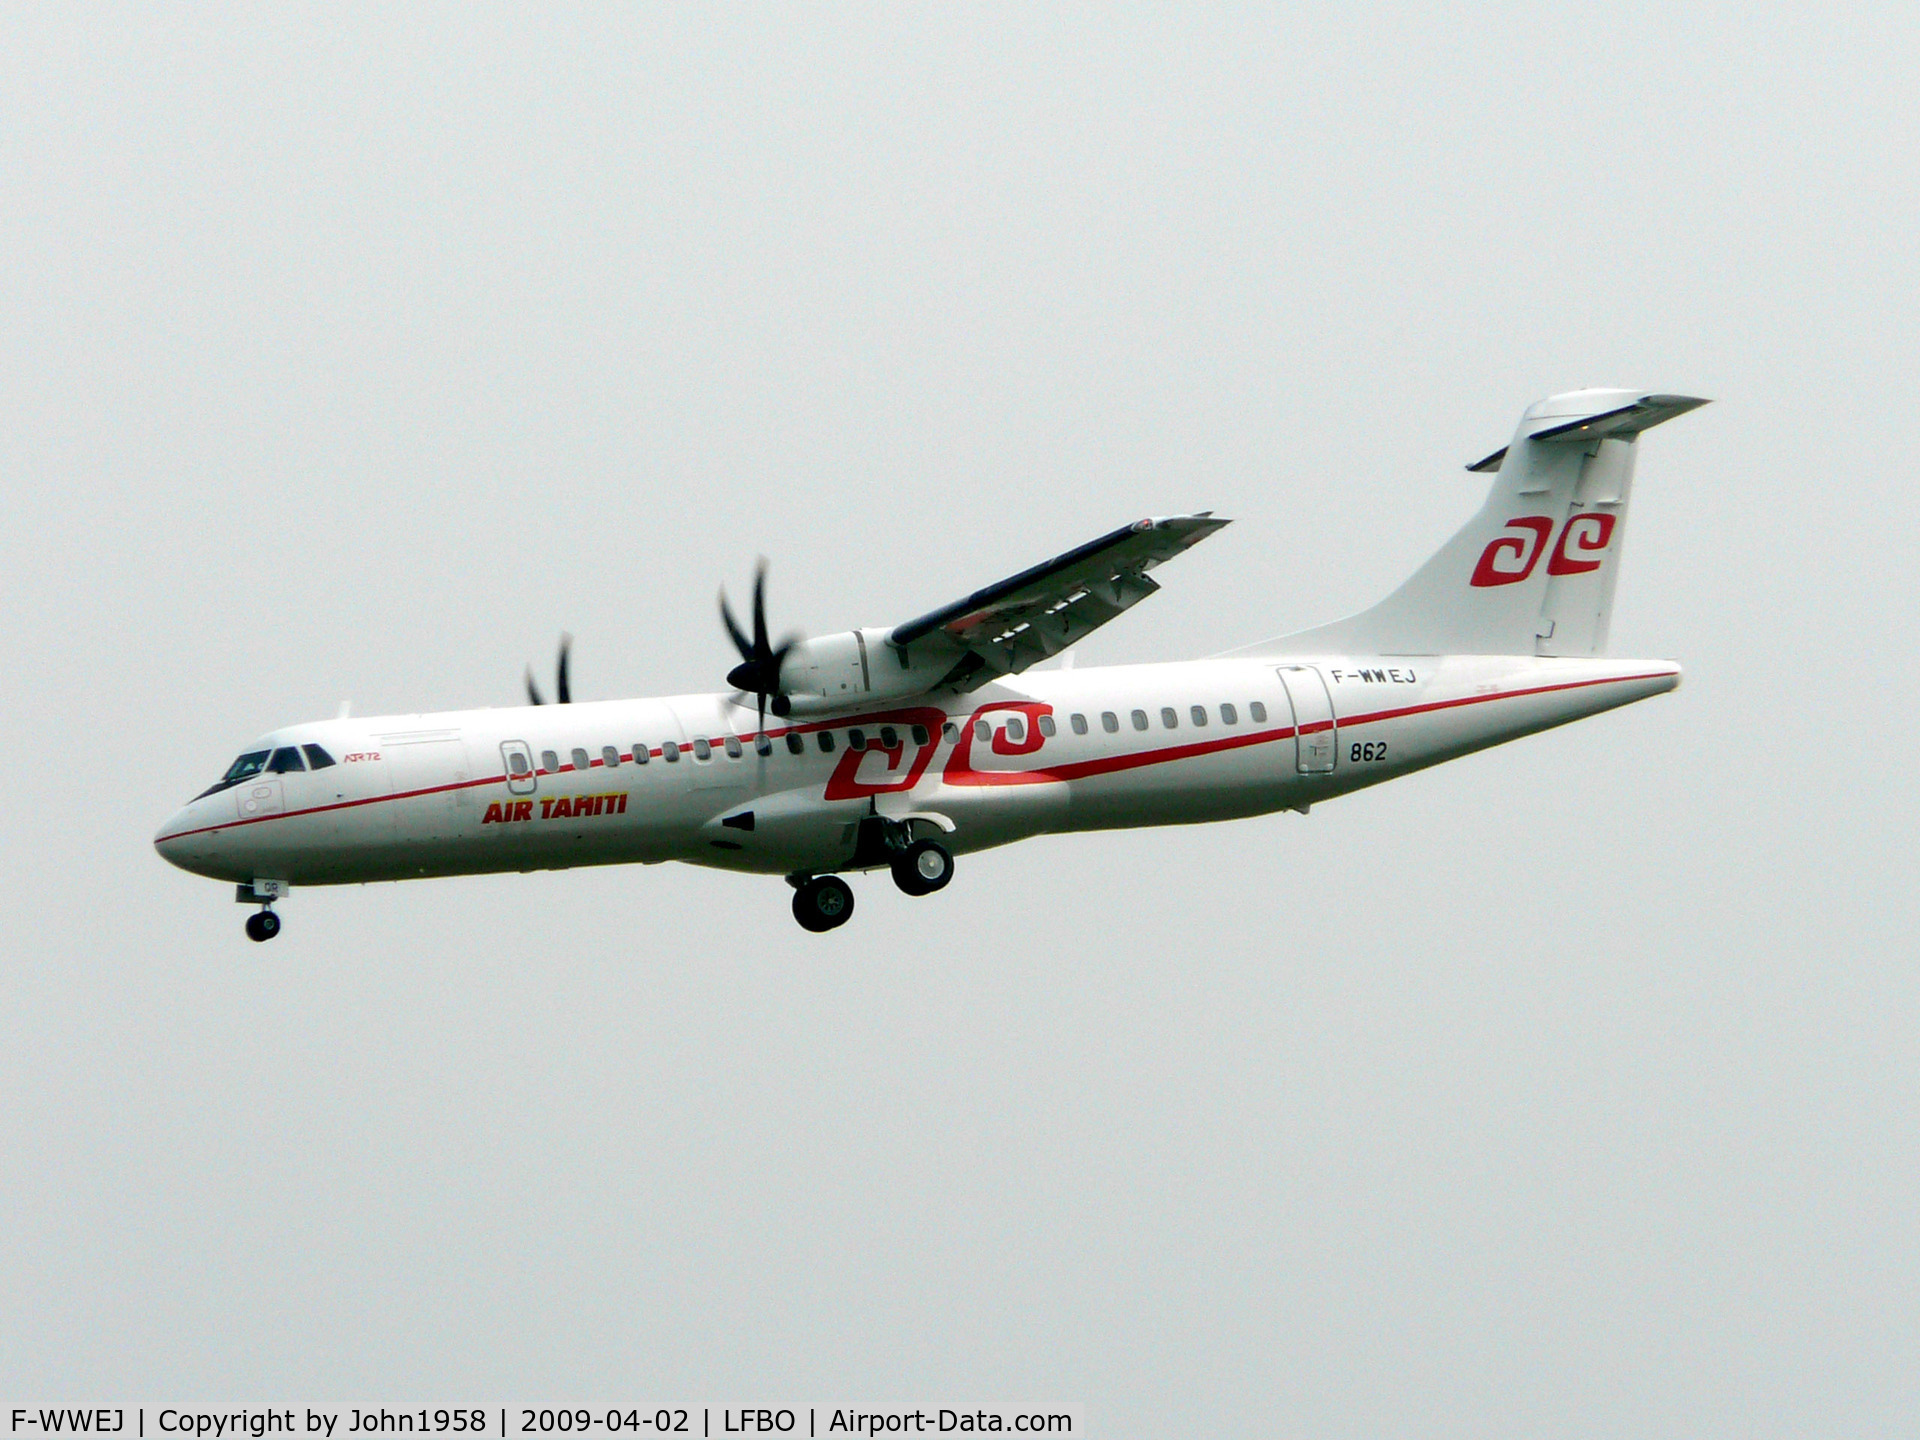 F-WWEJ, 2009 ATR 72-212A C/N 862, ATR-72, msn 862, to become F-OIQR of Air Tahiti, about to land at TLS